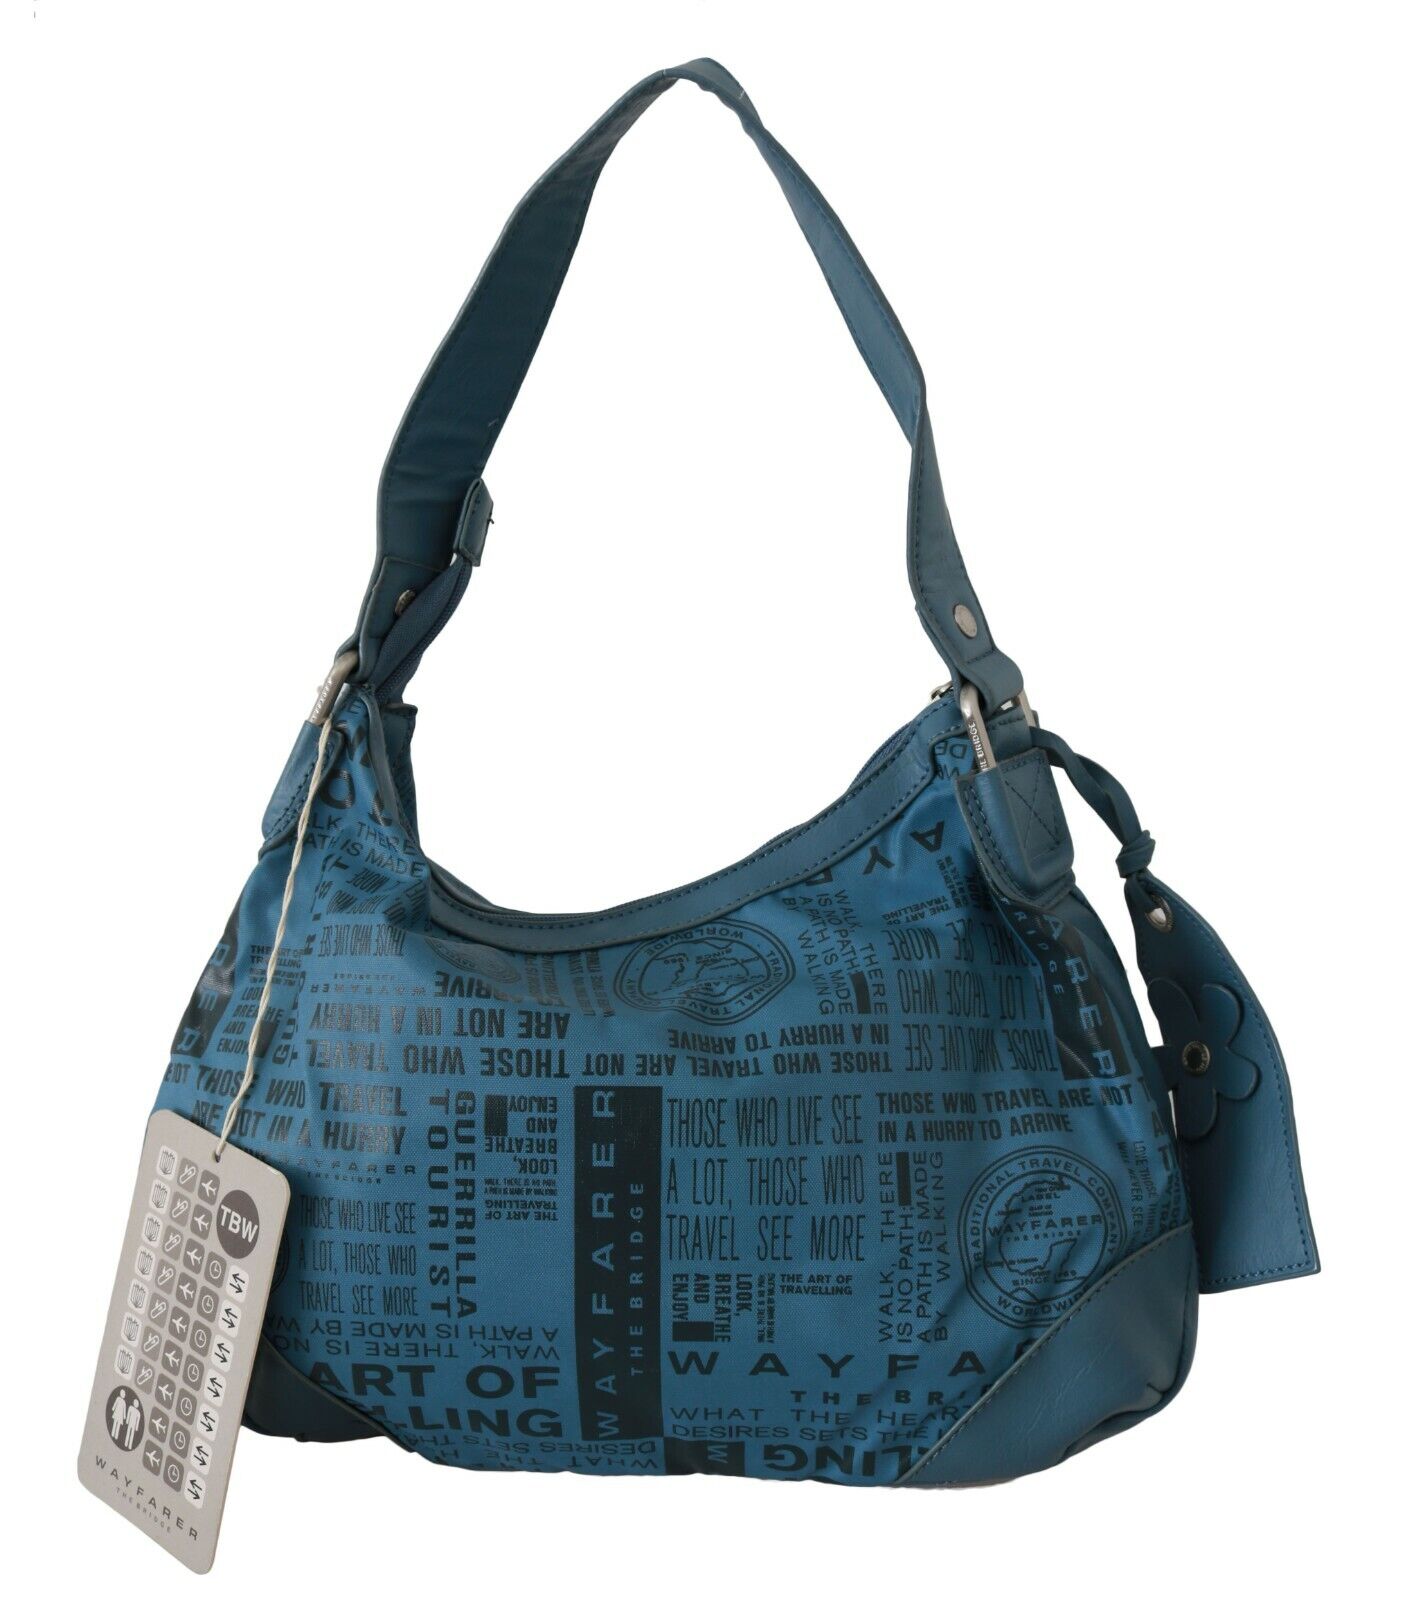 WAYFARER Shoulder Handbag Printed Purse Women Blue - Fizigo